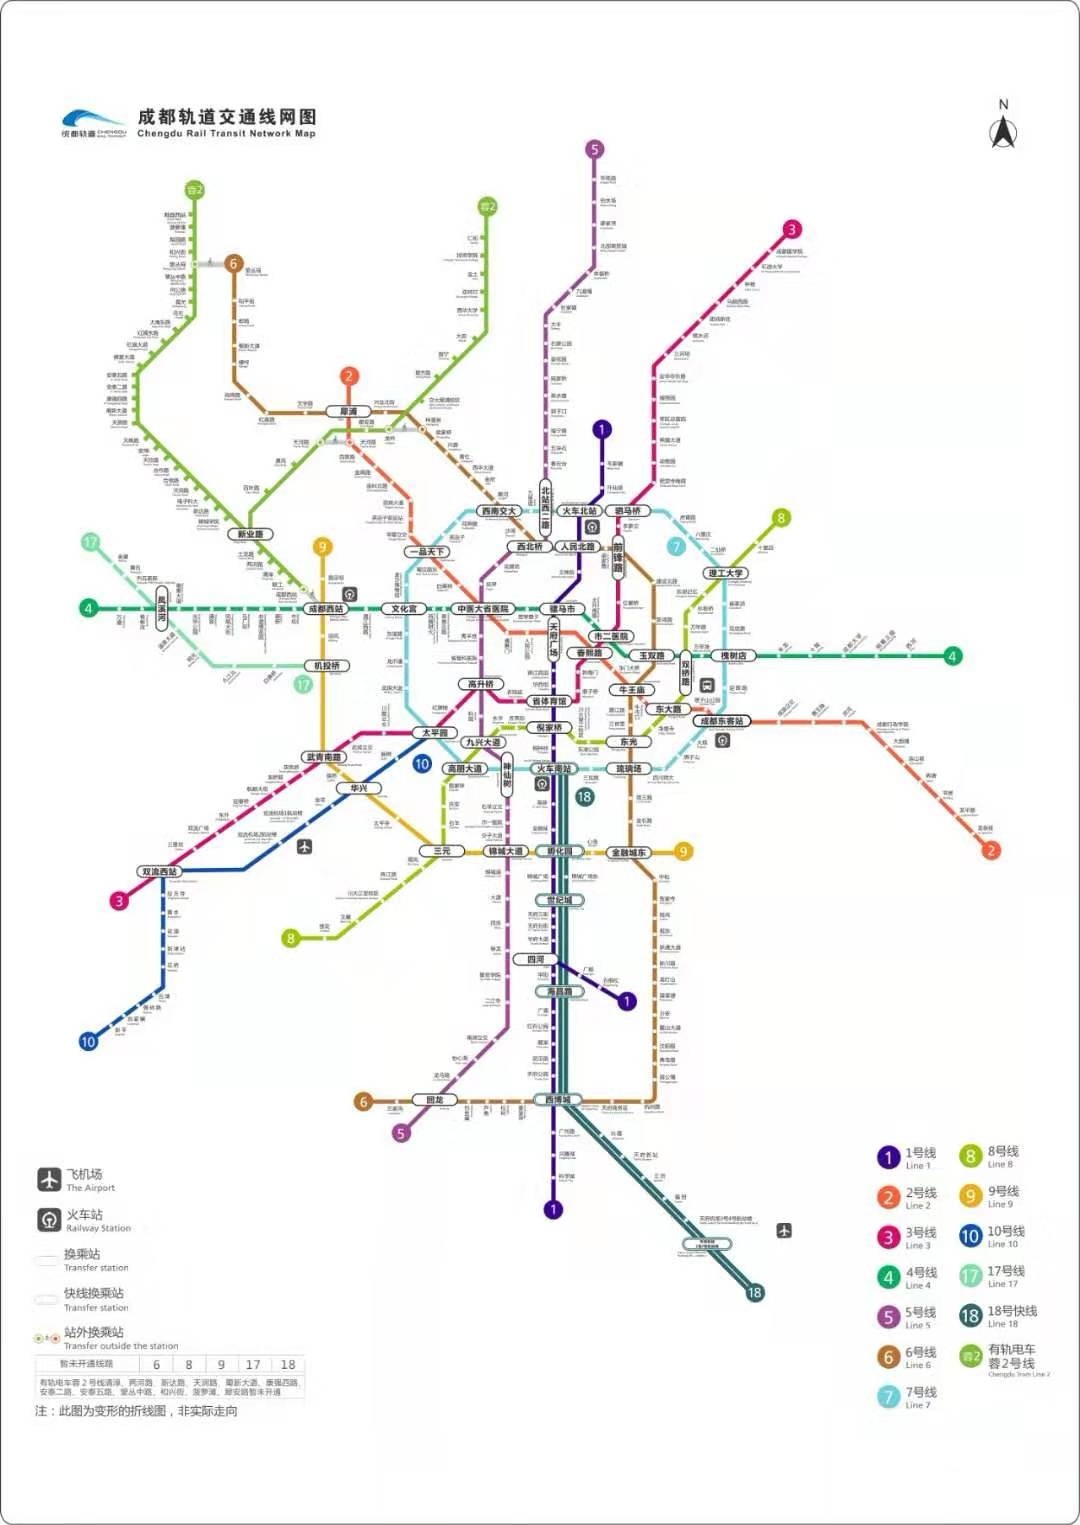 成都 地铁最新规划：2020开通14条线路 15条新线路开建！ - 买房导购 -四川乐居网